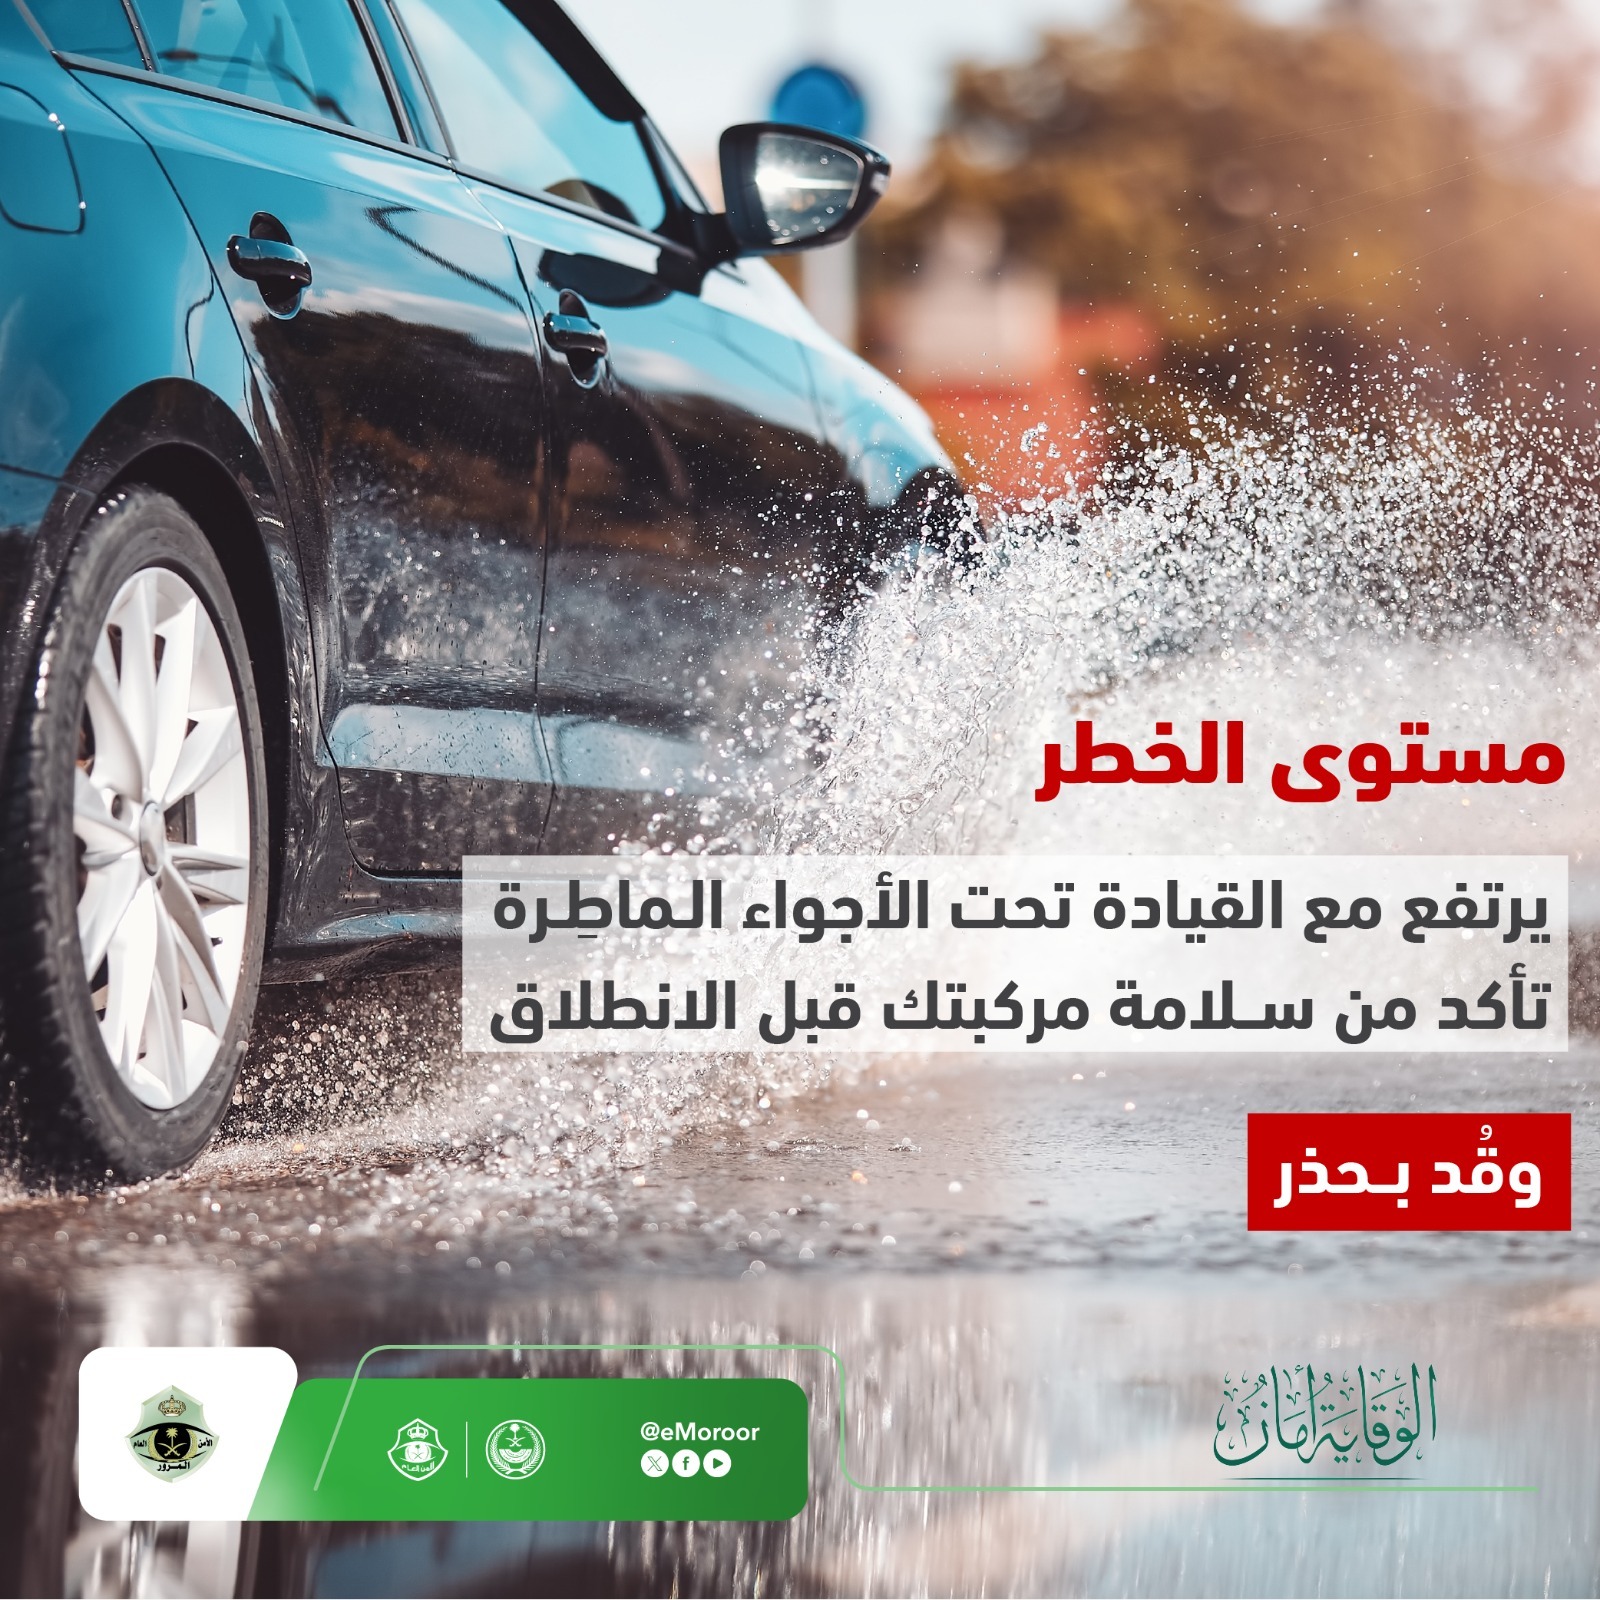 "المرور" يوجه 4 نصائح لقيادة آمنة أثناء الأمطار لتجنب الحوادث 7